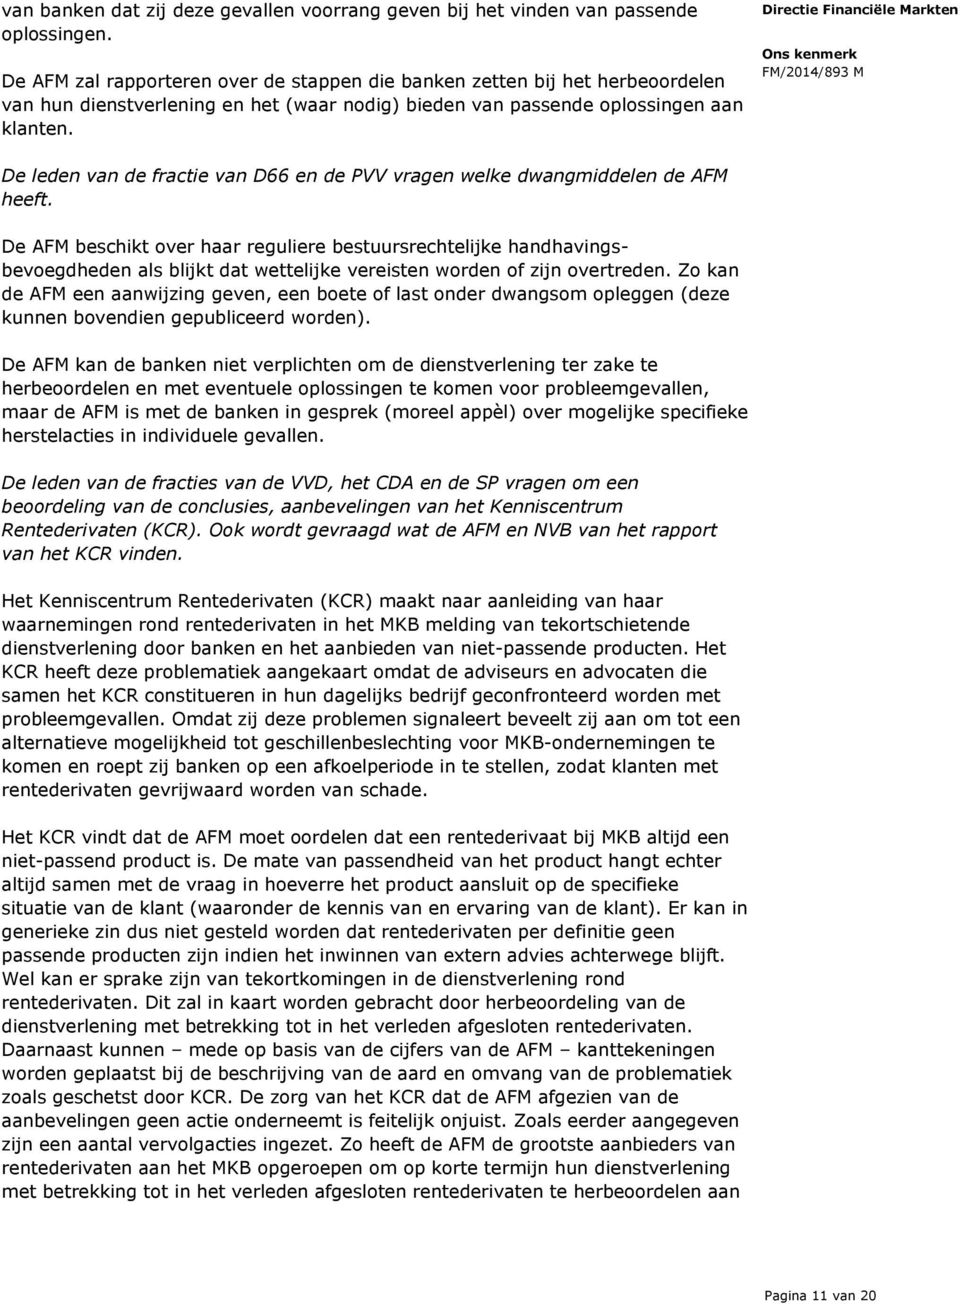 De leden van de fractie van D66 en de PVV vragen welke dwangmiddelen de AFM heeft.